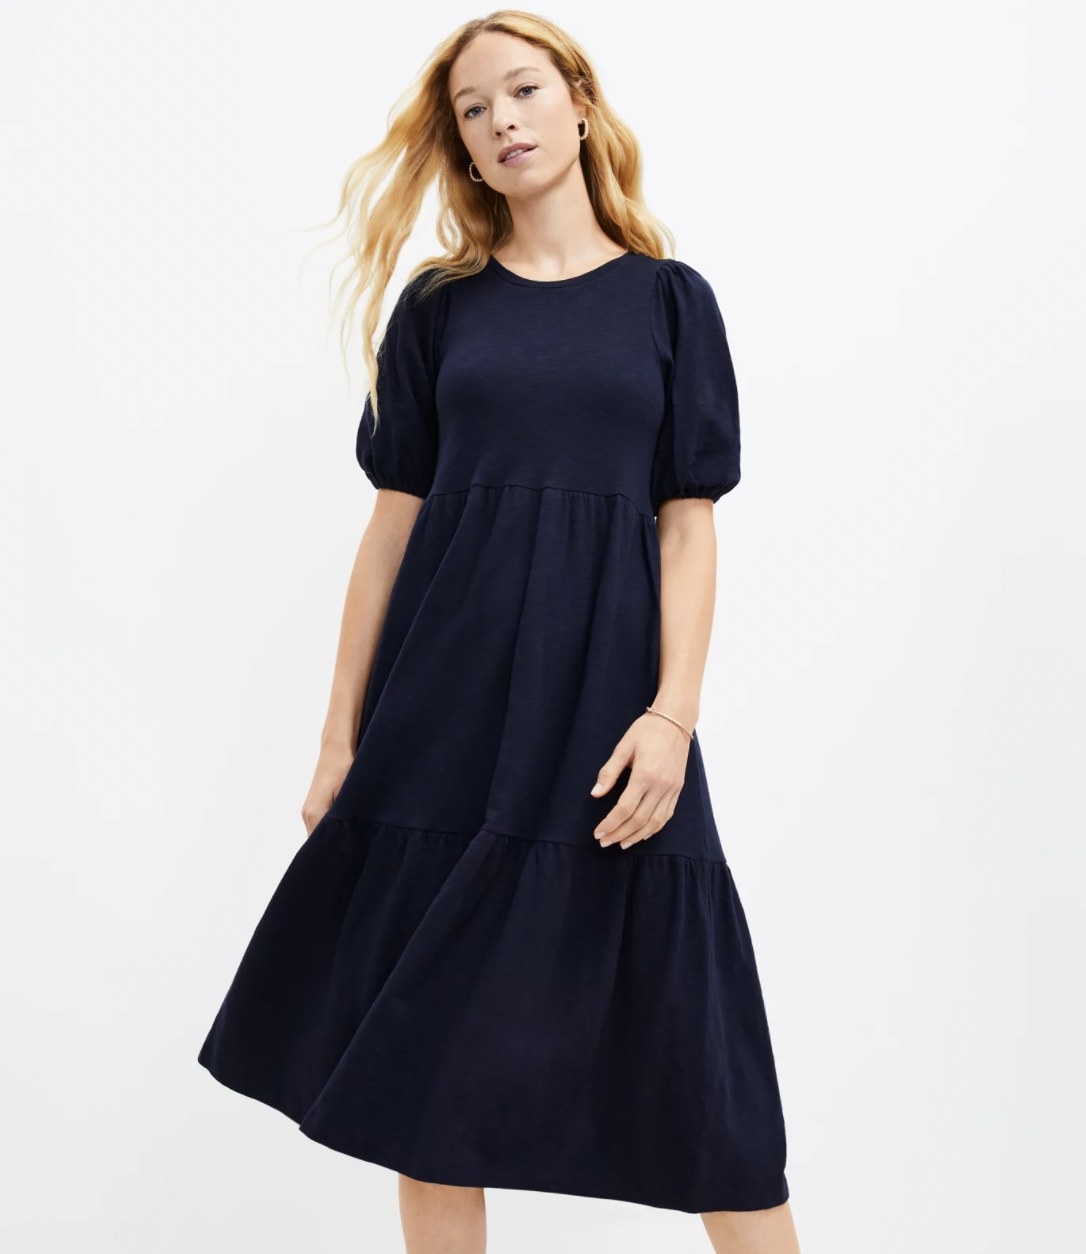 Model in the navy blue midi dress